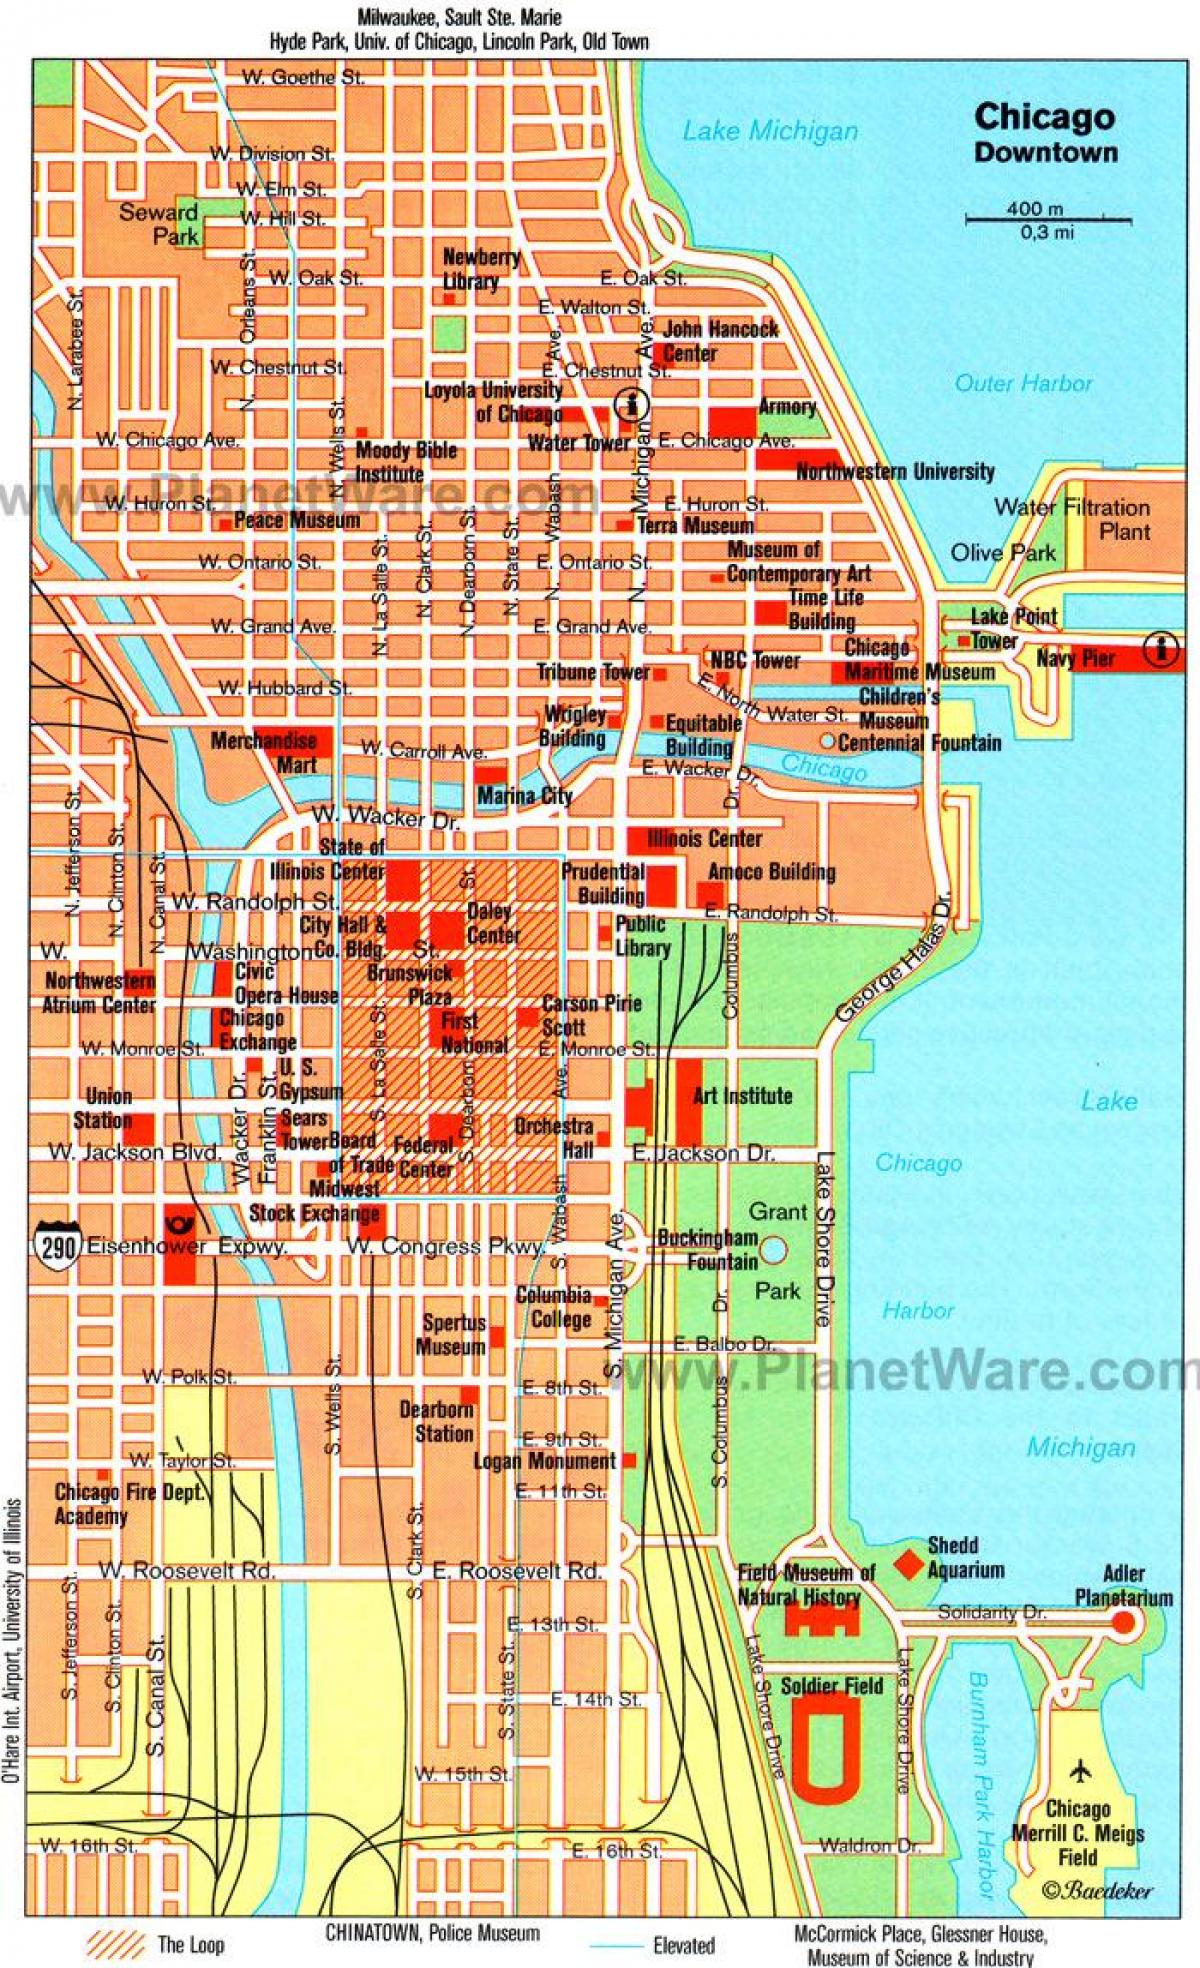 kort over Chicago-seværdigheder